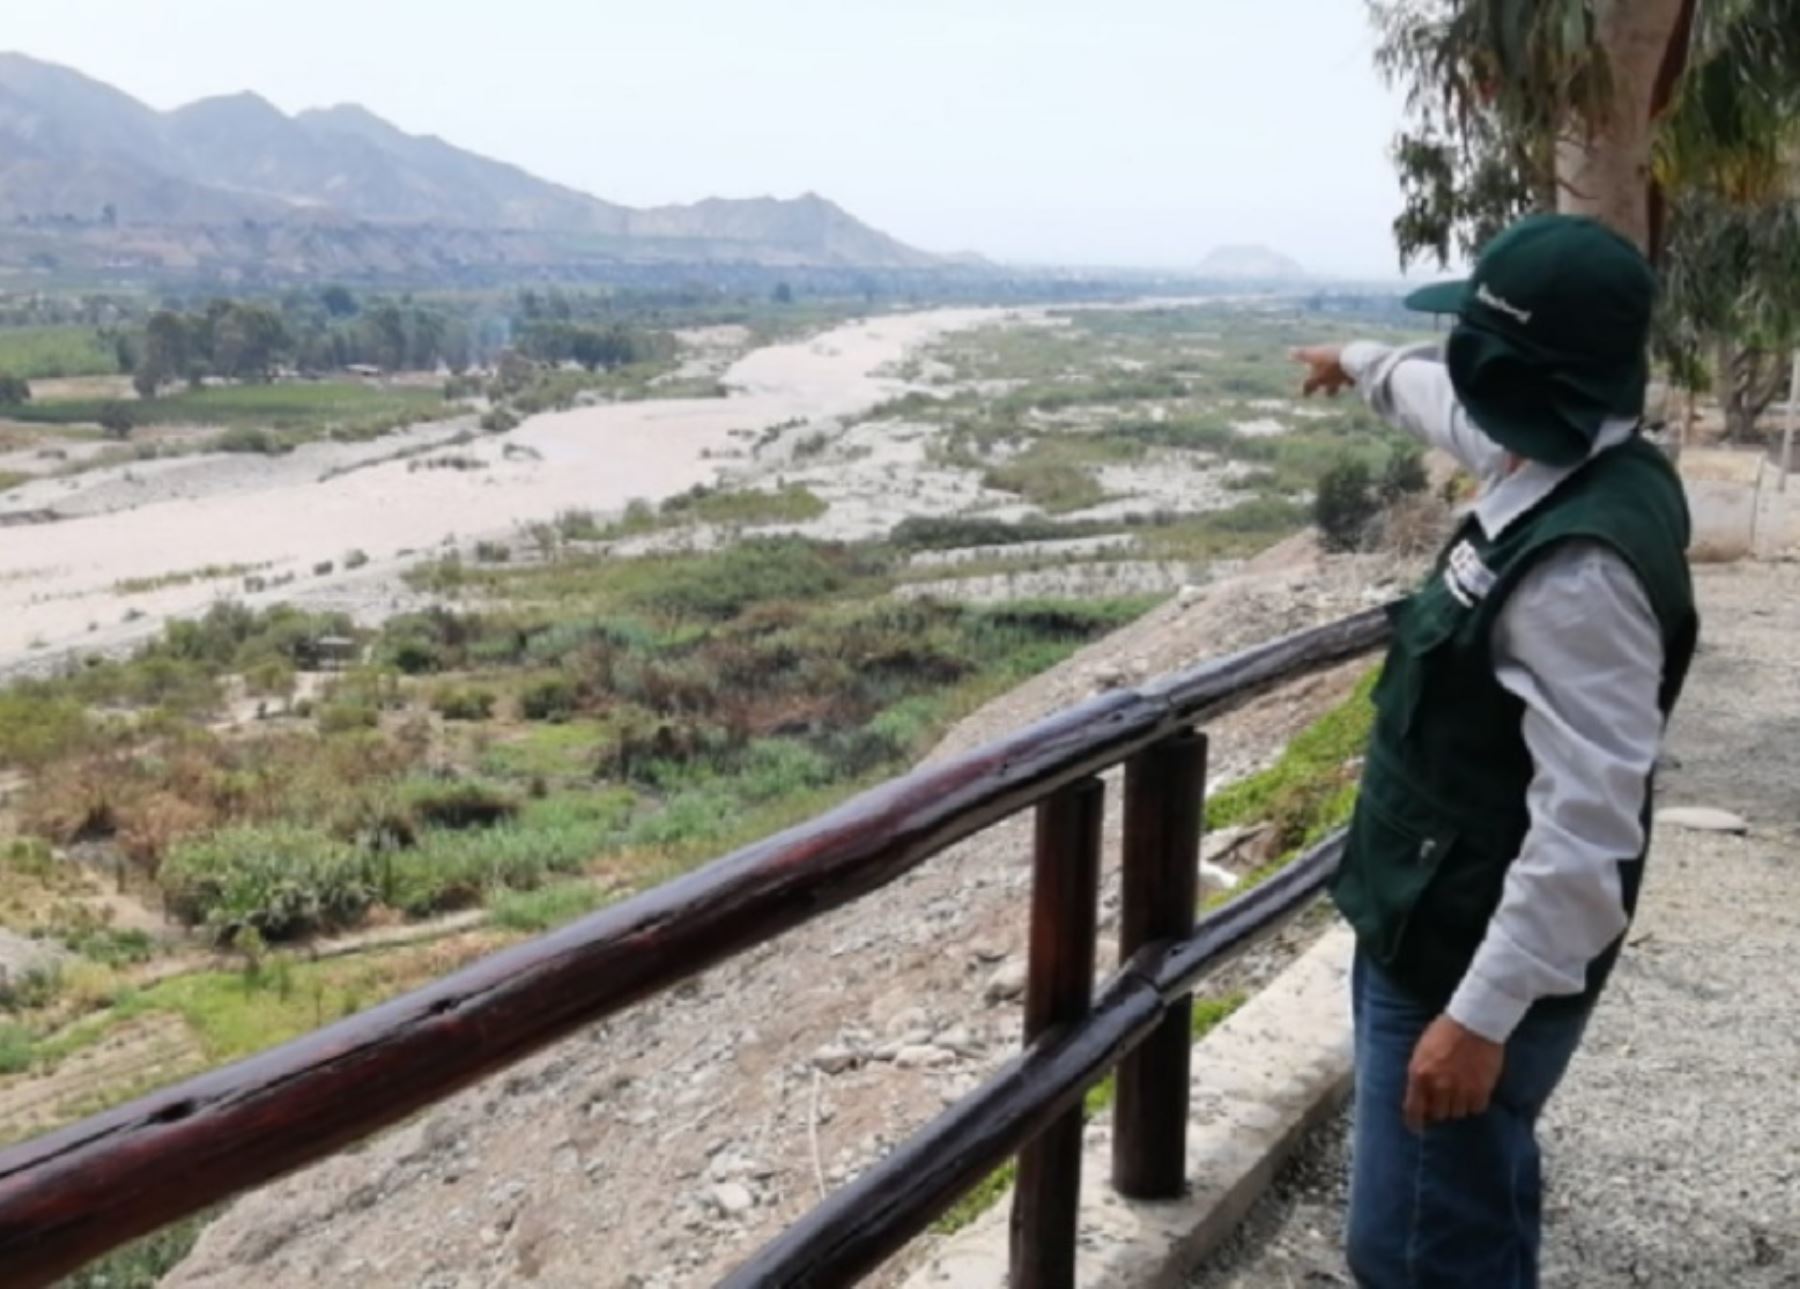 El Ministerio de Desarrollo Agrario y Riego, a través de la Autoridad Nacional del Agua (ANA), inspeccionó el desborde del río Mala en el distrito de Santa Cruz de Flores, provincia Cañete, región Lima. La inundación fue ocasionada debido al incremento de las lluvias en la parte alta de la cuenca del río Mala.